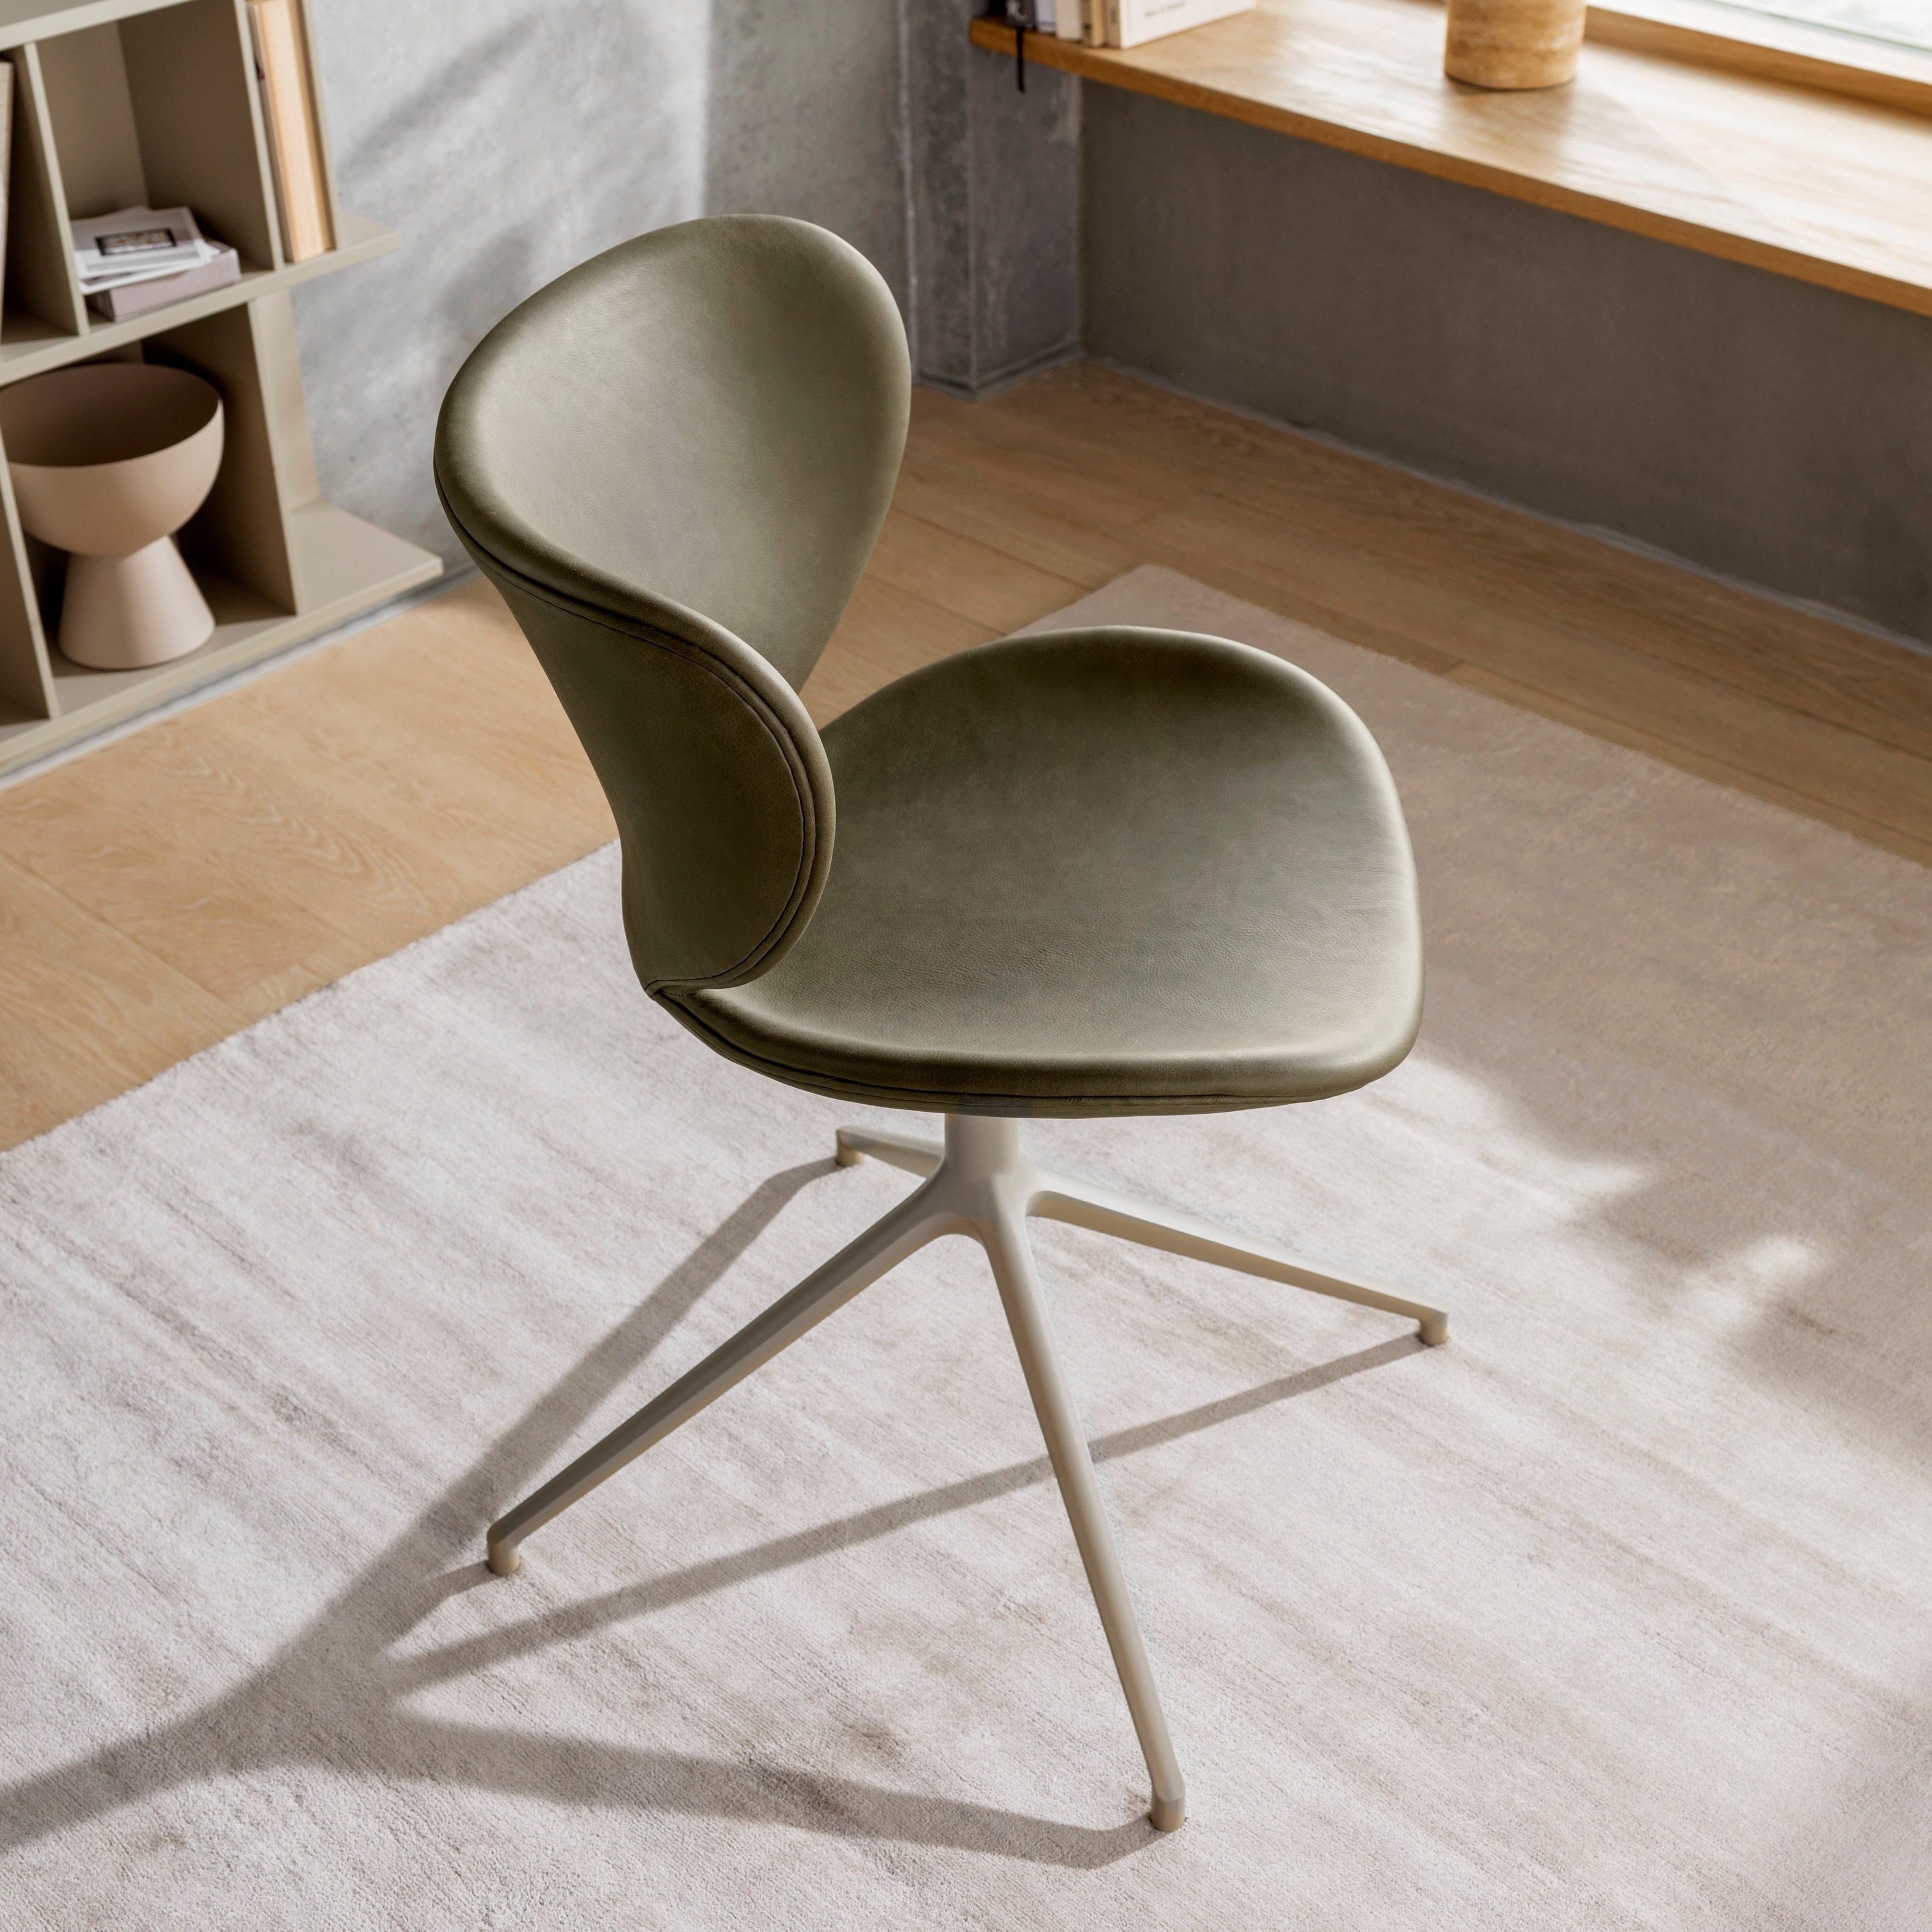 Olivově zelená židle s kovovou základnou v prosluněné místnosti s dřevěnými policemi a oknem.